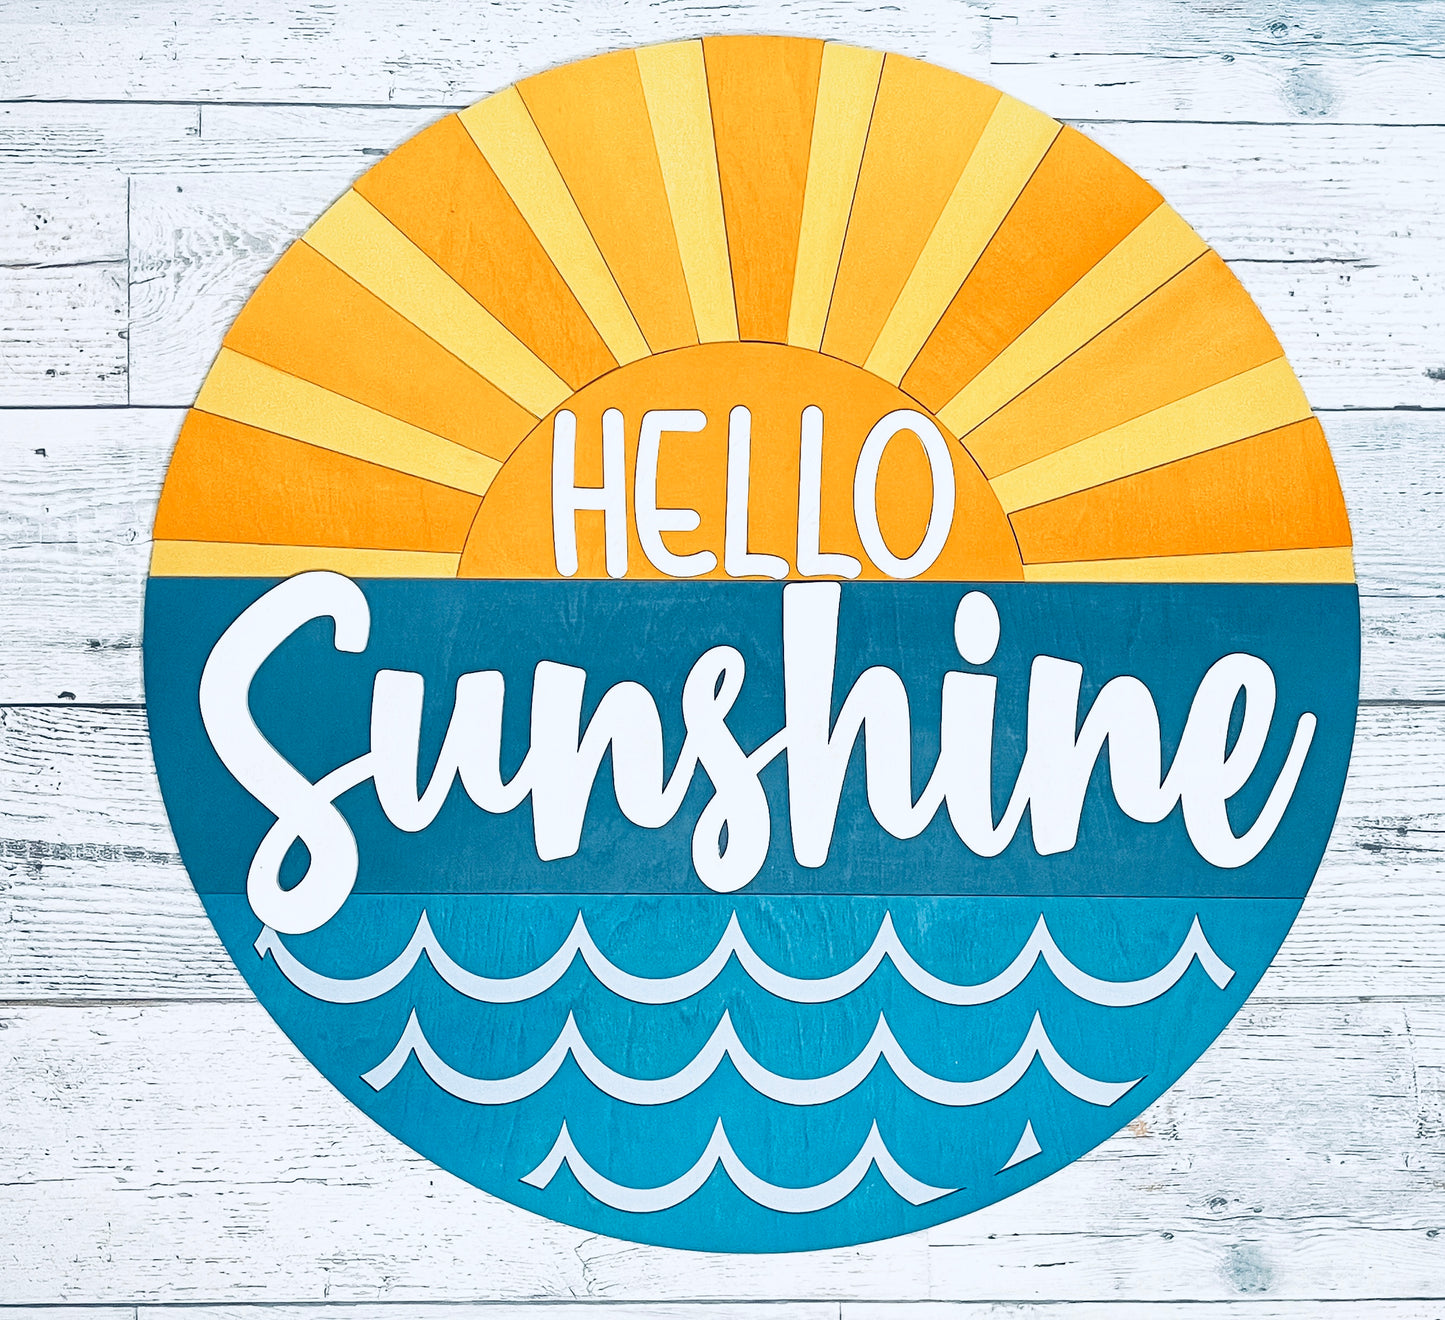 Hello Sunshine - Sunshine Door Hanger - Door Decor - Front Porch Decorations - Summer Decorations - Wall Hangings